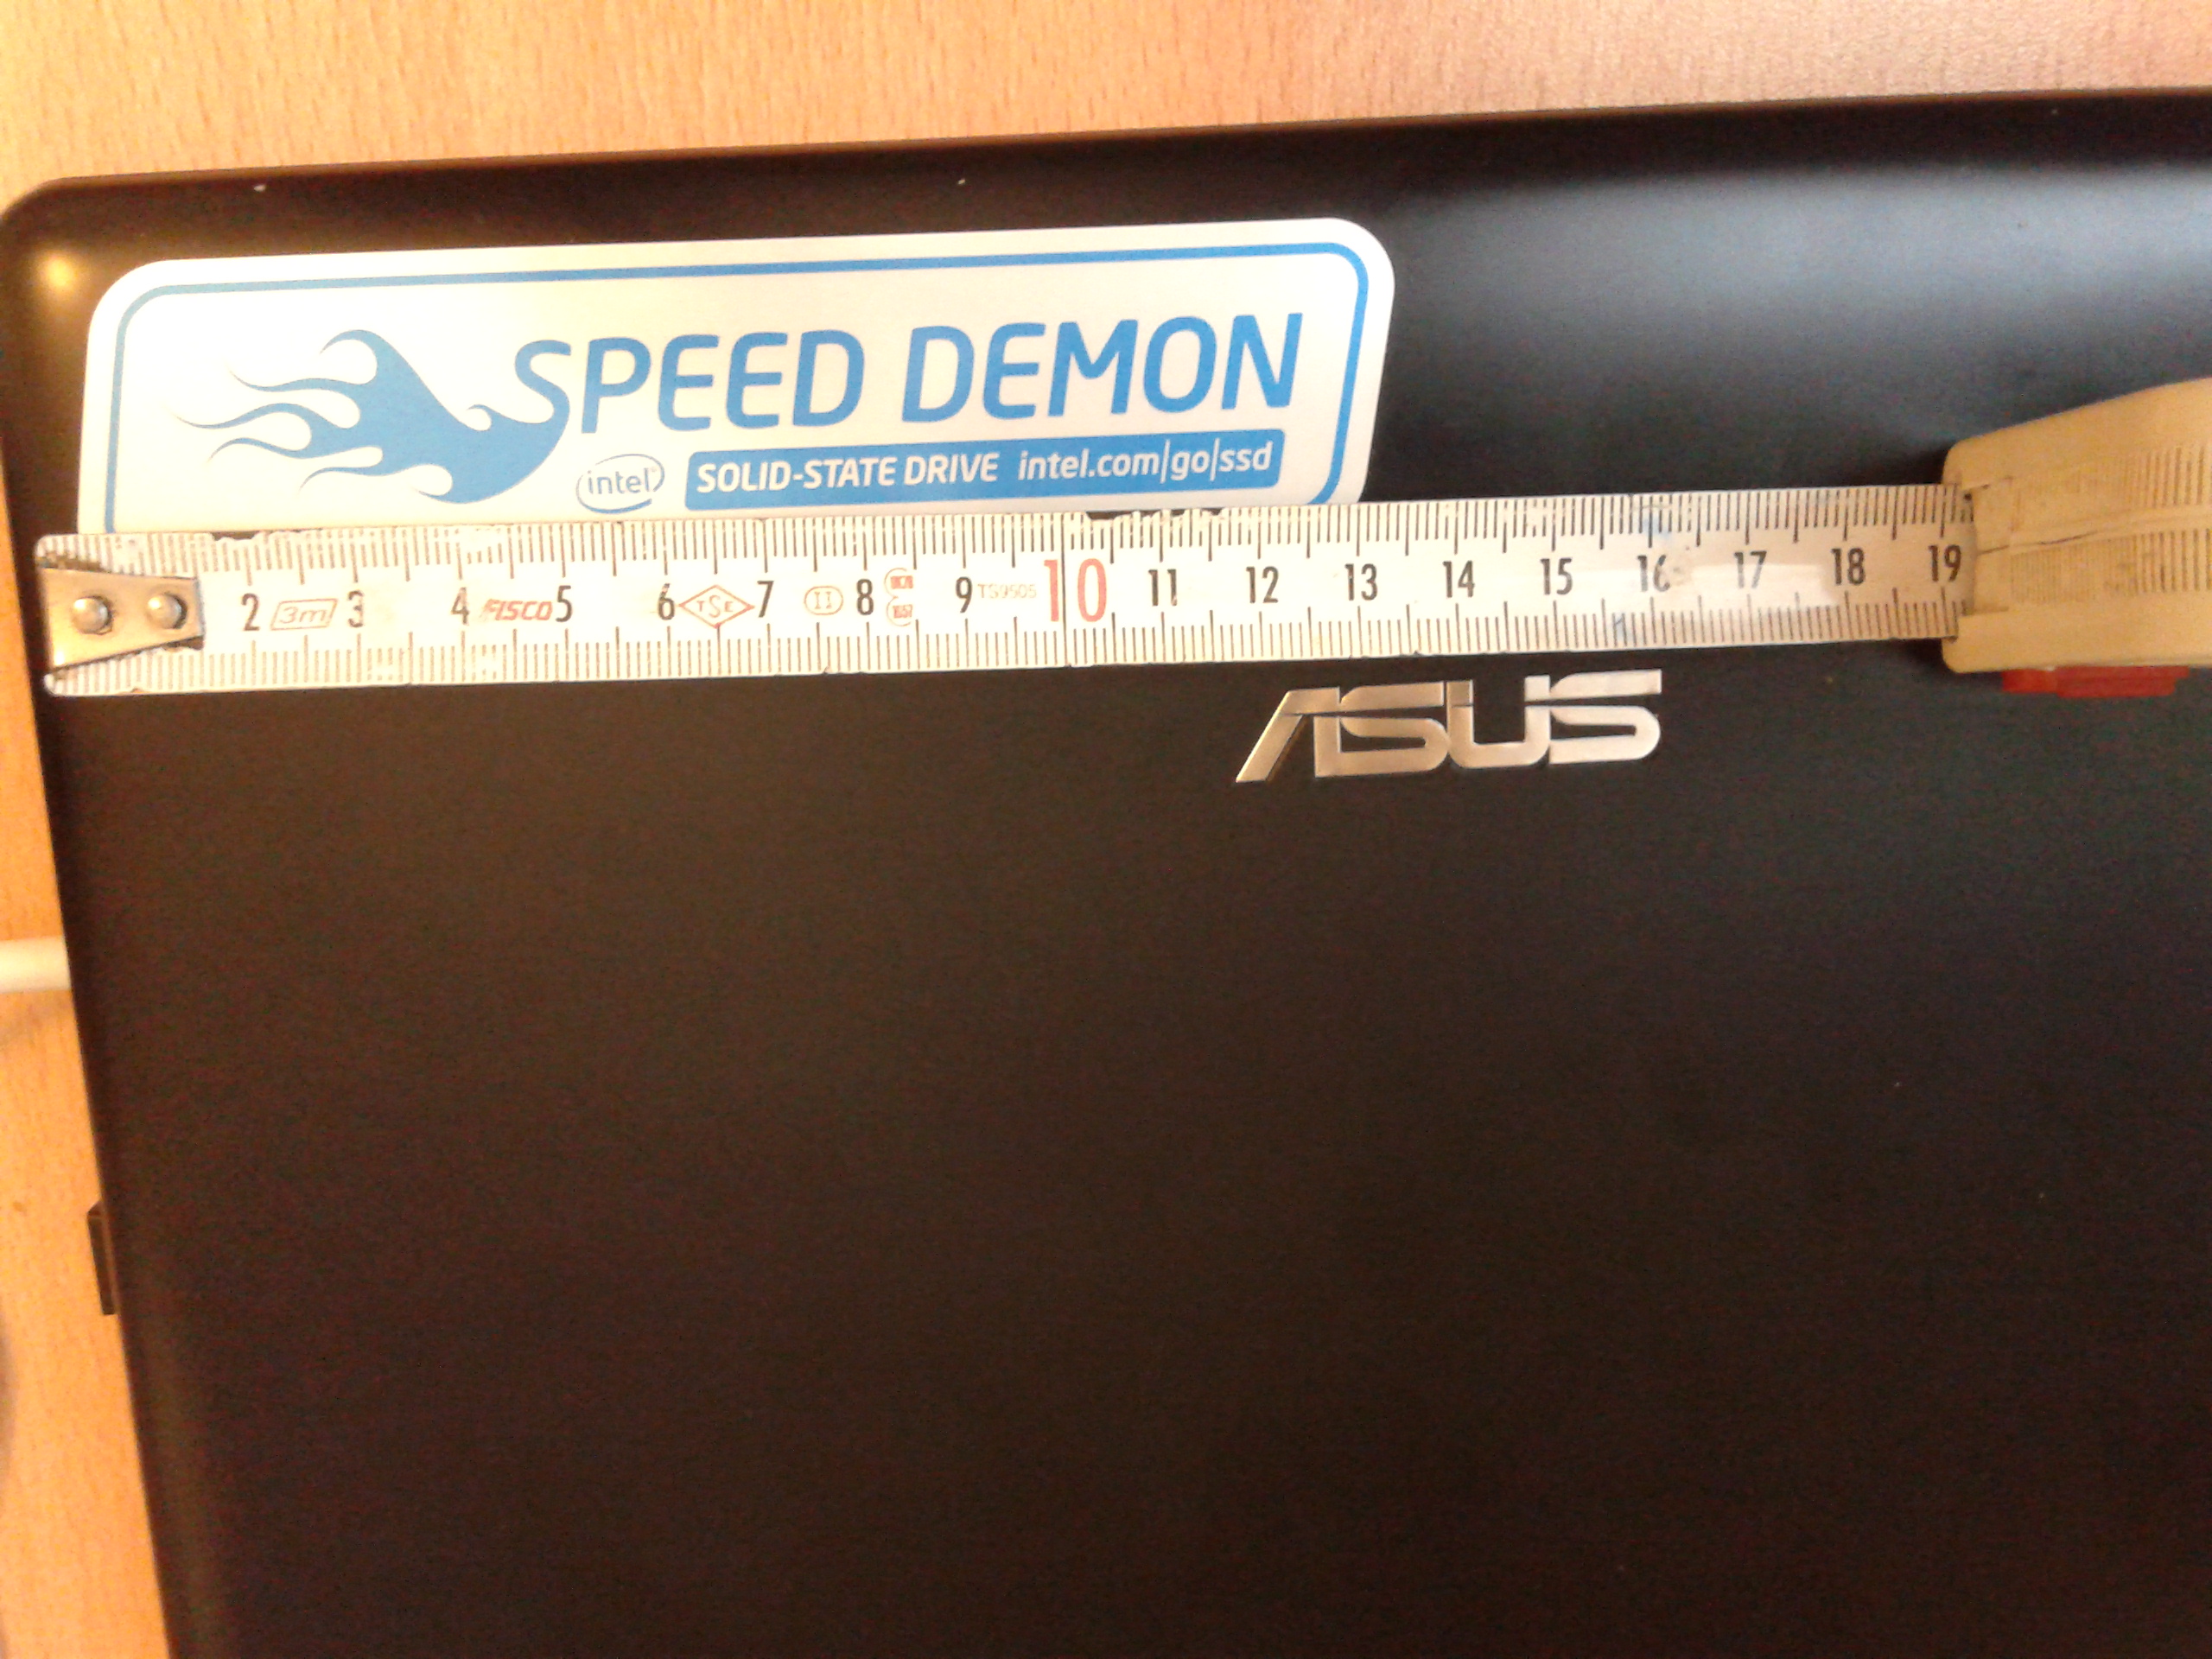  İntel SSD 520 Serisi Kullanıcıları